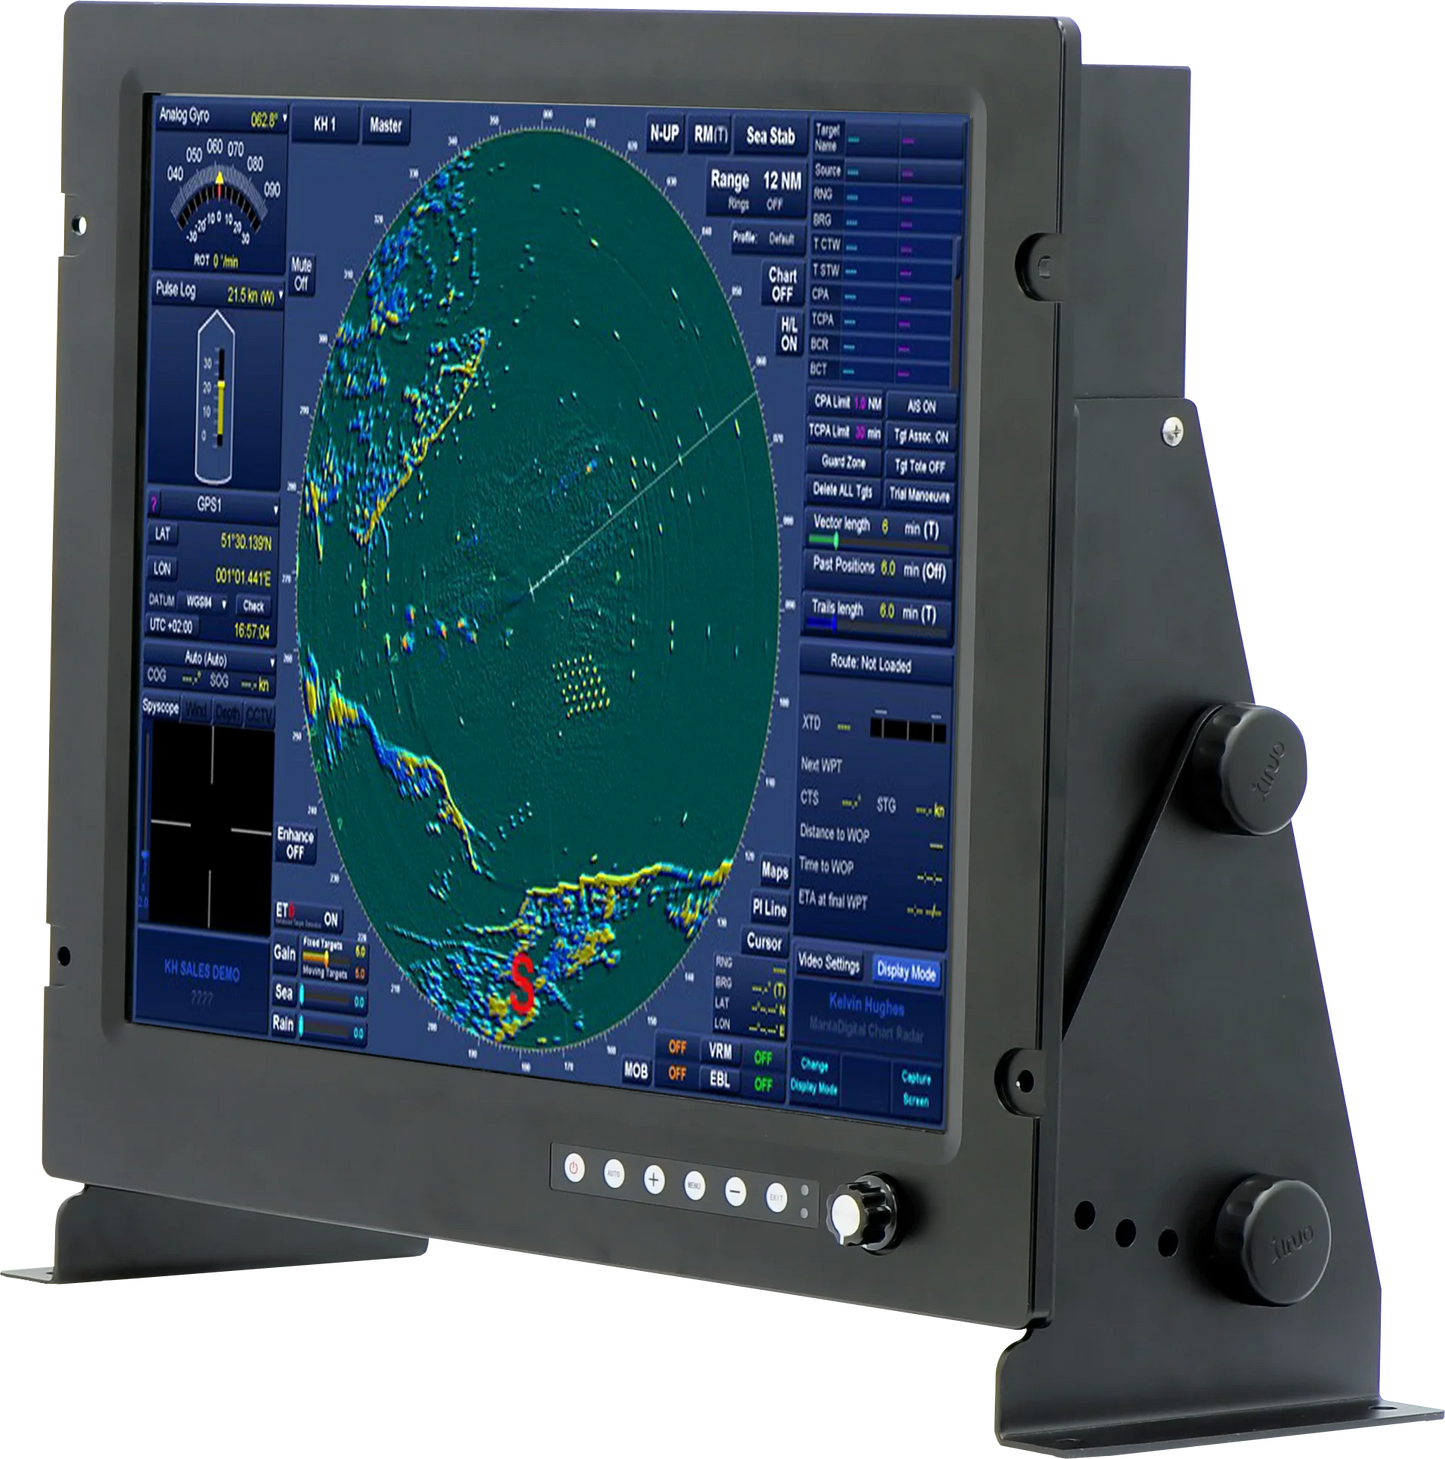 Pièces de rechange marines électronique marine XINUO 19 "grand écran d'affichage de moniteur LCD TFT HM-2619 certificat CE norme IMO 